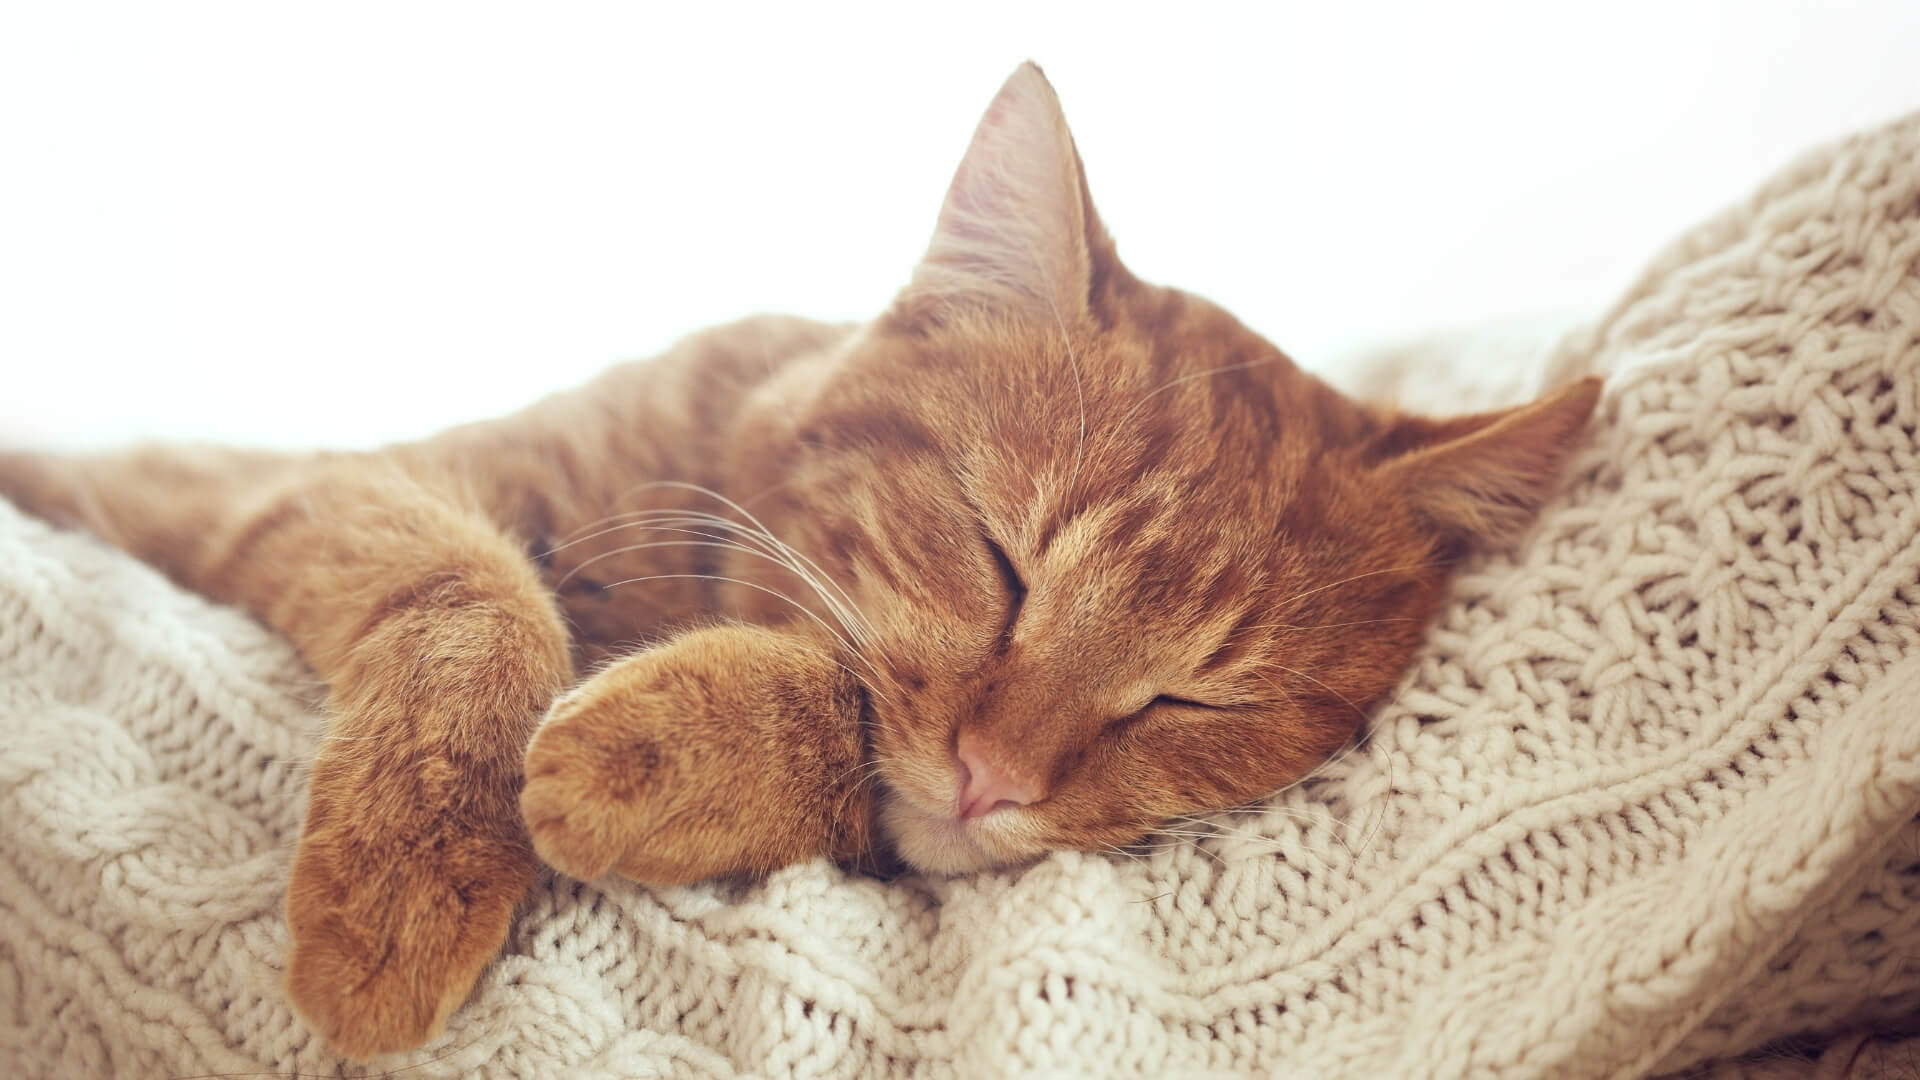 An Orange Cat Sleeping on Someone's Beige Knit Sweater